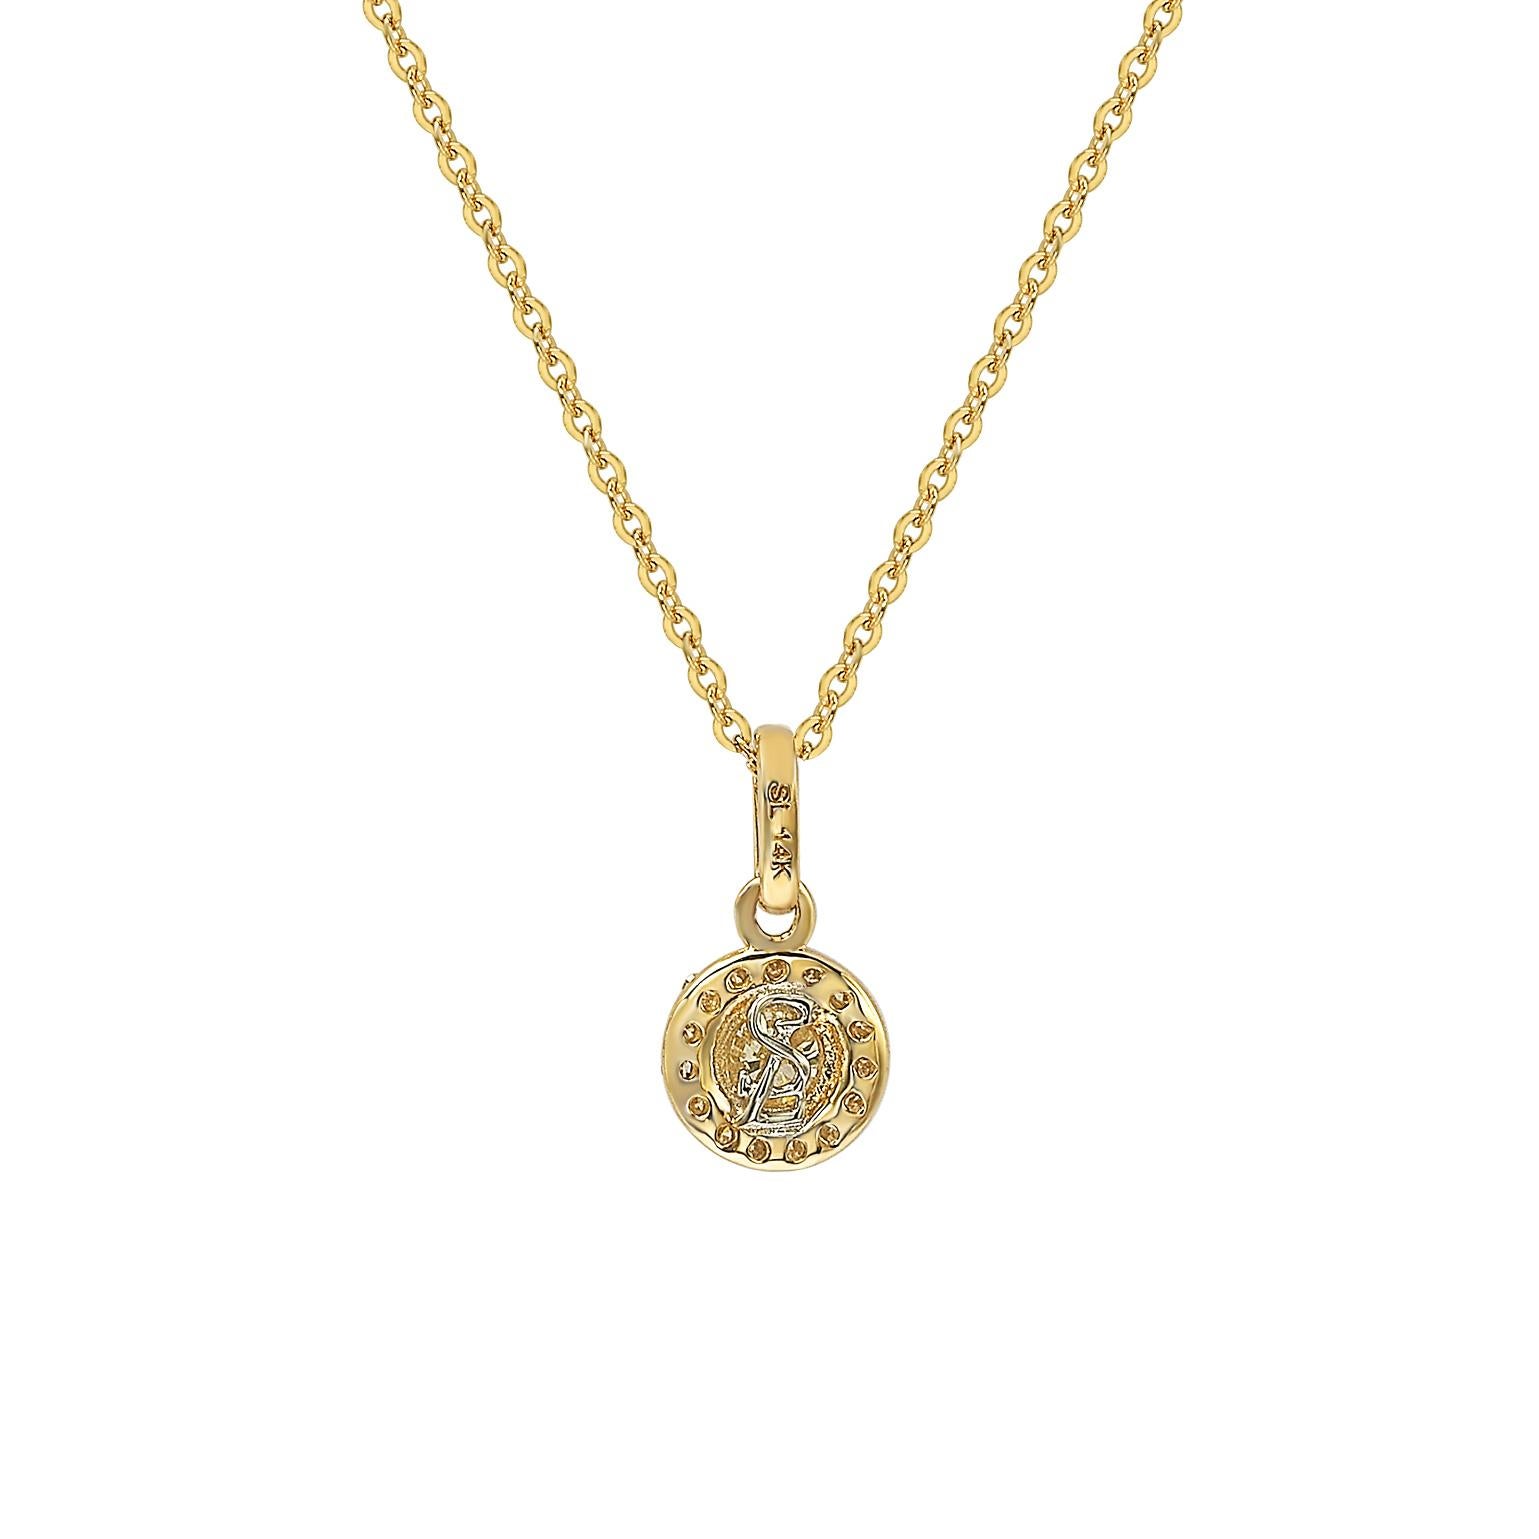 Cet élégant pendentif auréolé de diamants Suzy Levian présente des diamants de taille ronde sur une monture en or jaune 14 carats. Ce magnifique pendentif contient 20 diamants blancs de taille ronde pour un total de 0,35 ctw. La pierre centrale,